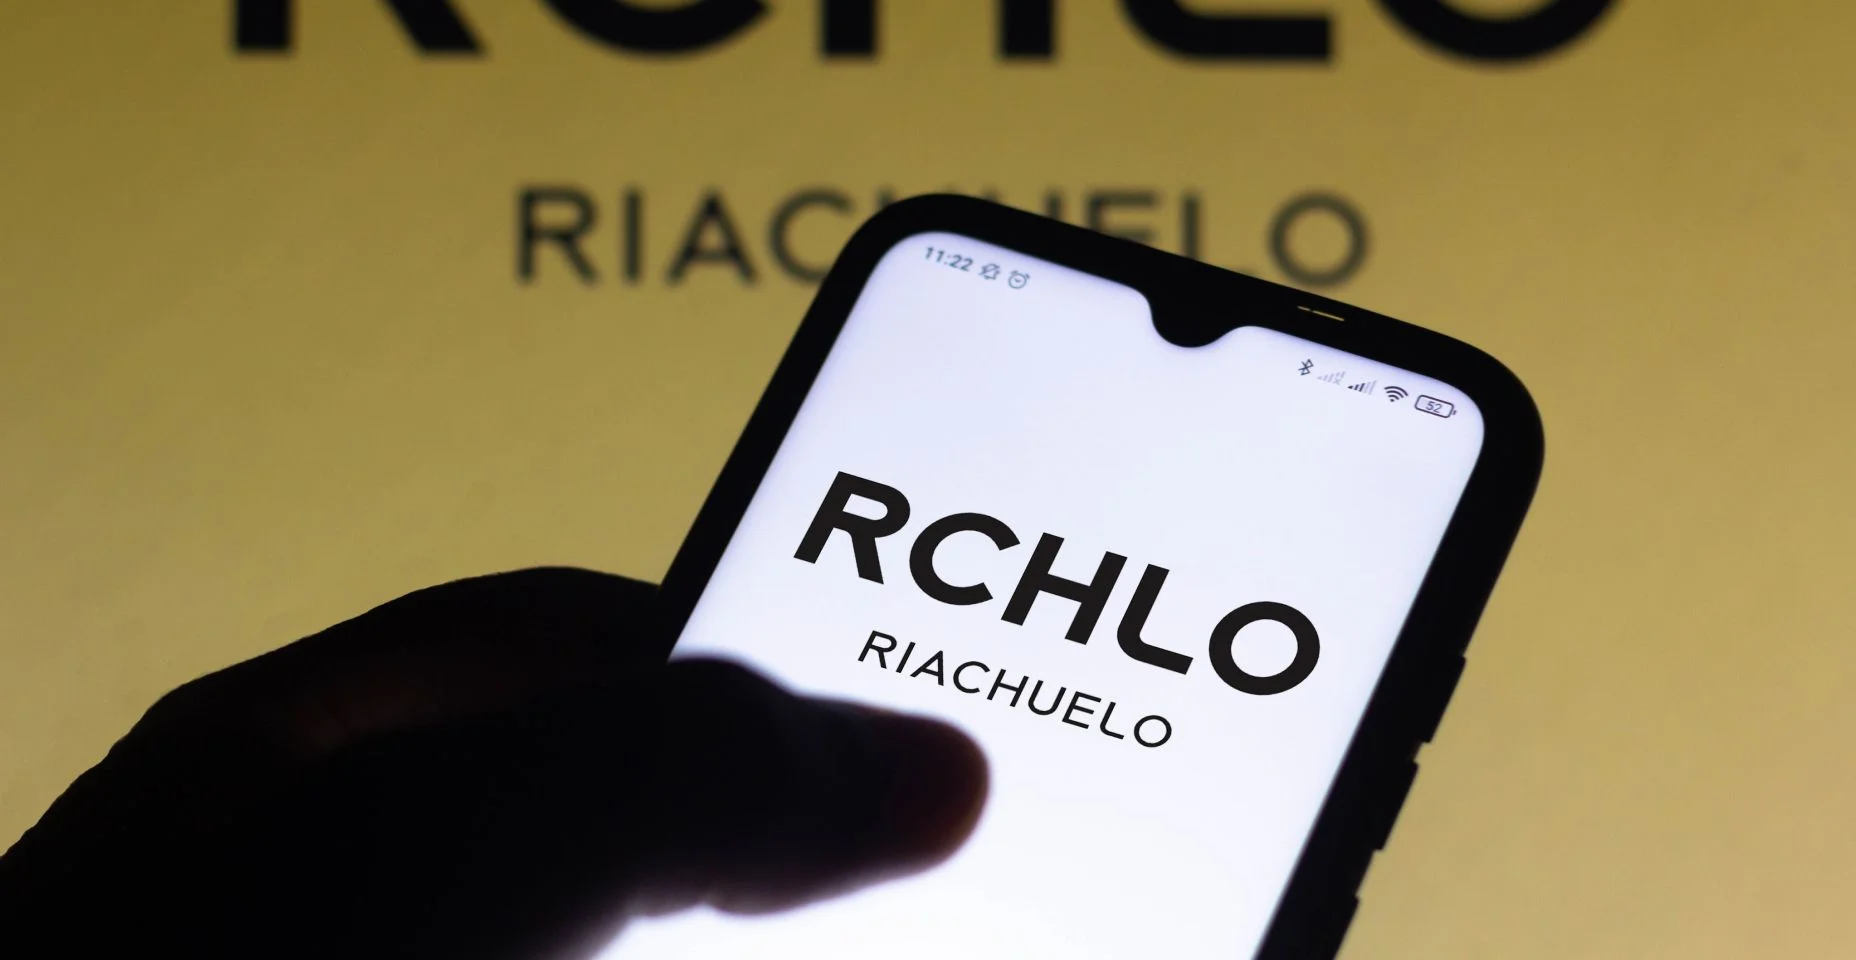 Nesta ilustração fotográfica o logotipo da Riachuelo visto exibido na tela de um smartphone.